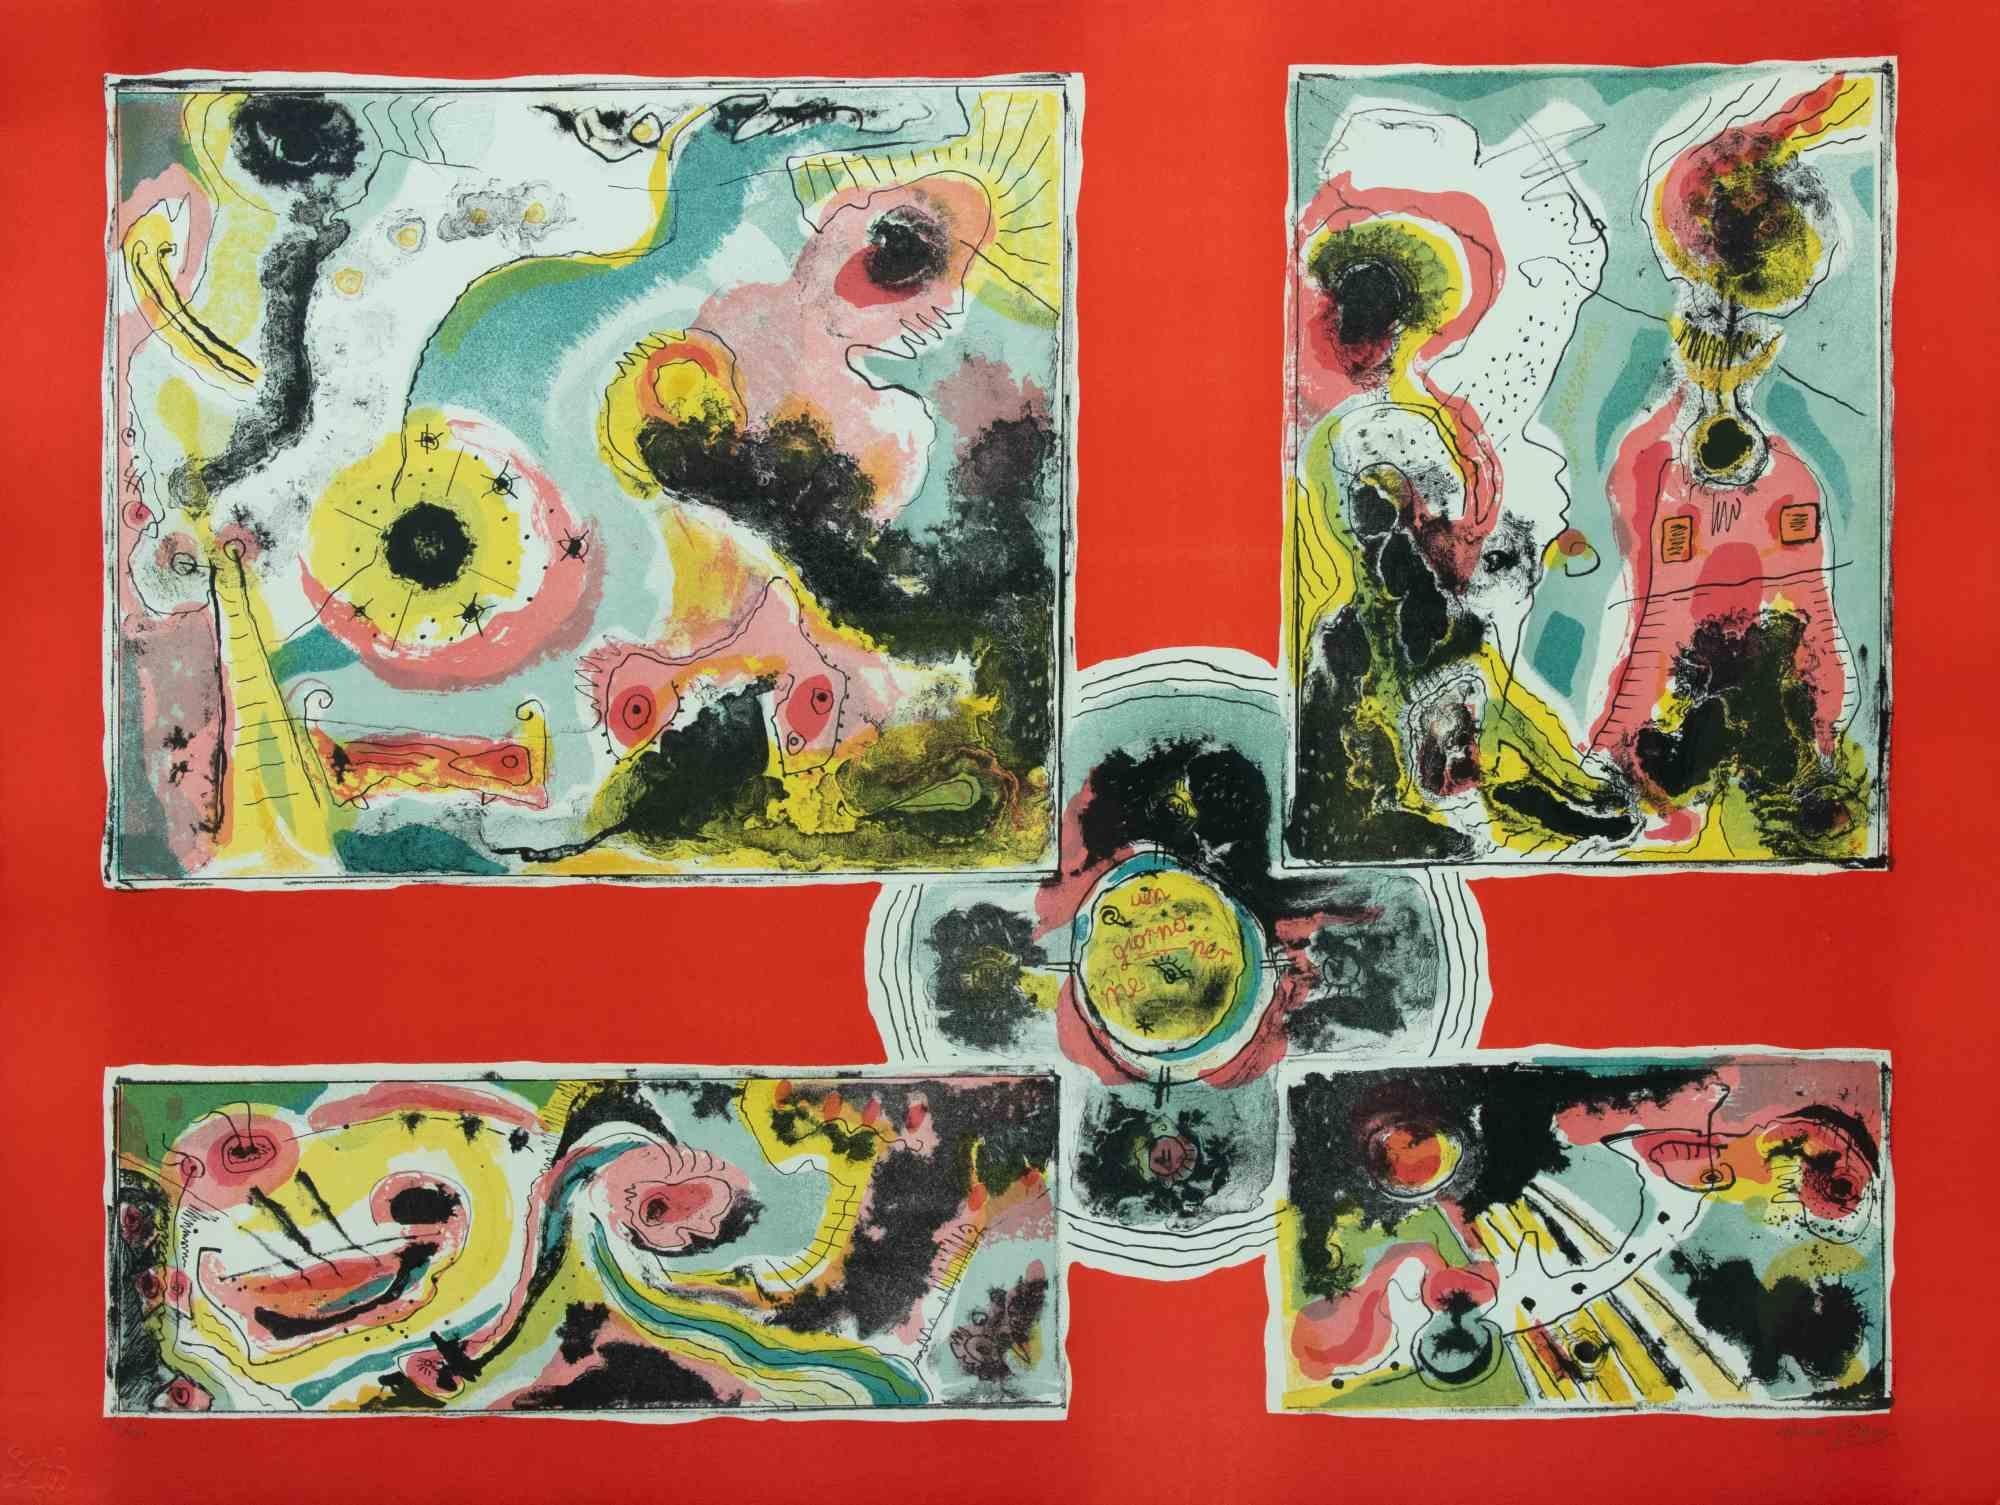 Red Abstract est une œuvre d'art contemporain réalisée par Le Oben dans les années 1970.

Lithographie en couleurs mélangées.

Signé à la main dans la marge inférieure.

Numéroté dans la marge inférieure.

Edition de 100 exemplaires. 

